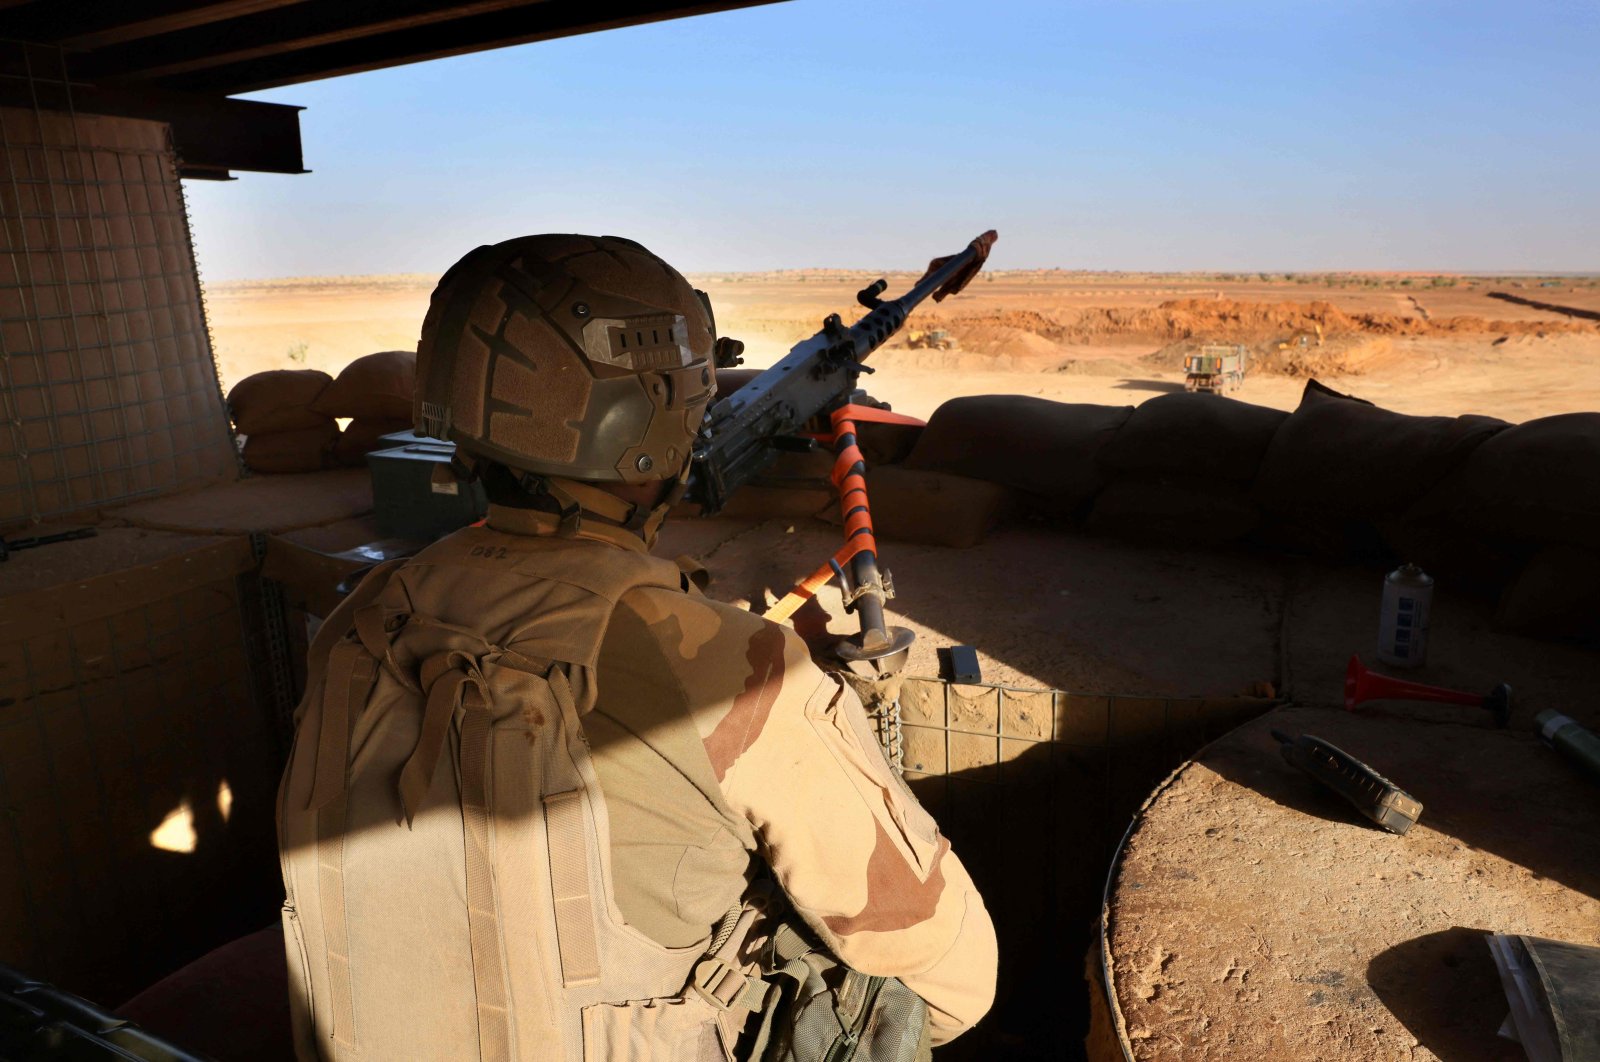 Rusia akan tetap mendukung militer Mali meskipun ada kritik dari Barat